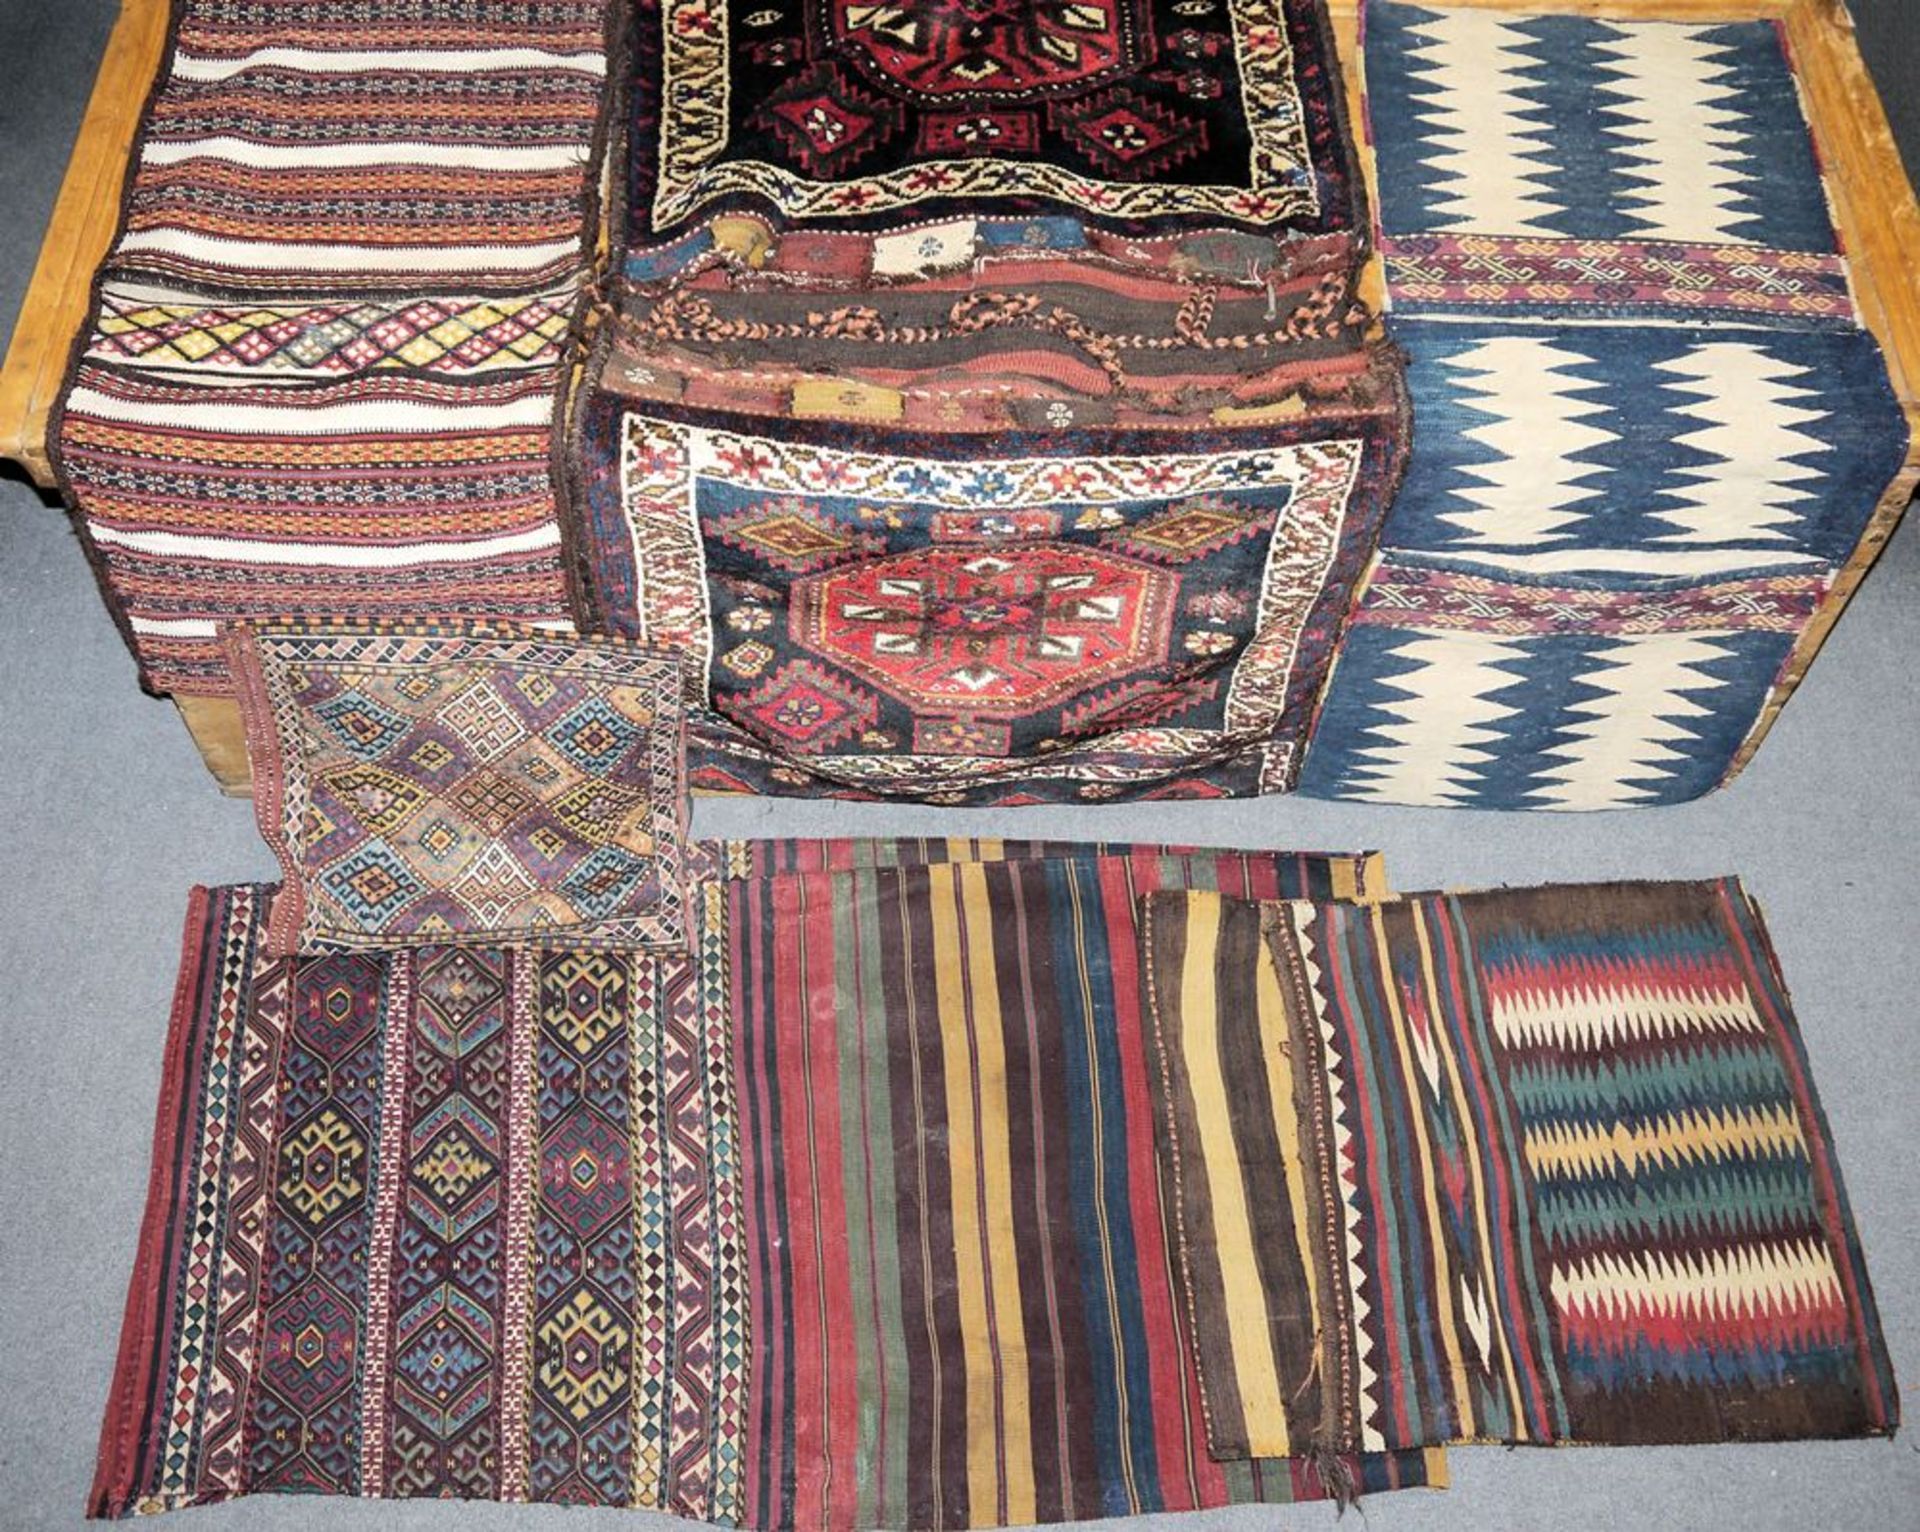 Neun große Kelim-Satteltaschen und Taschen, z.T antik, Iran-Türkei, ab 19. Jh. - Bild 2 aus 2